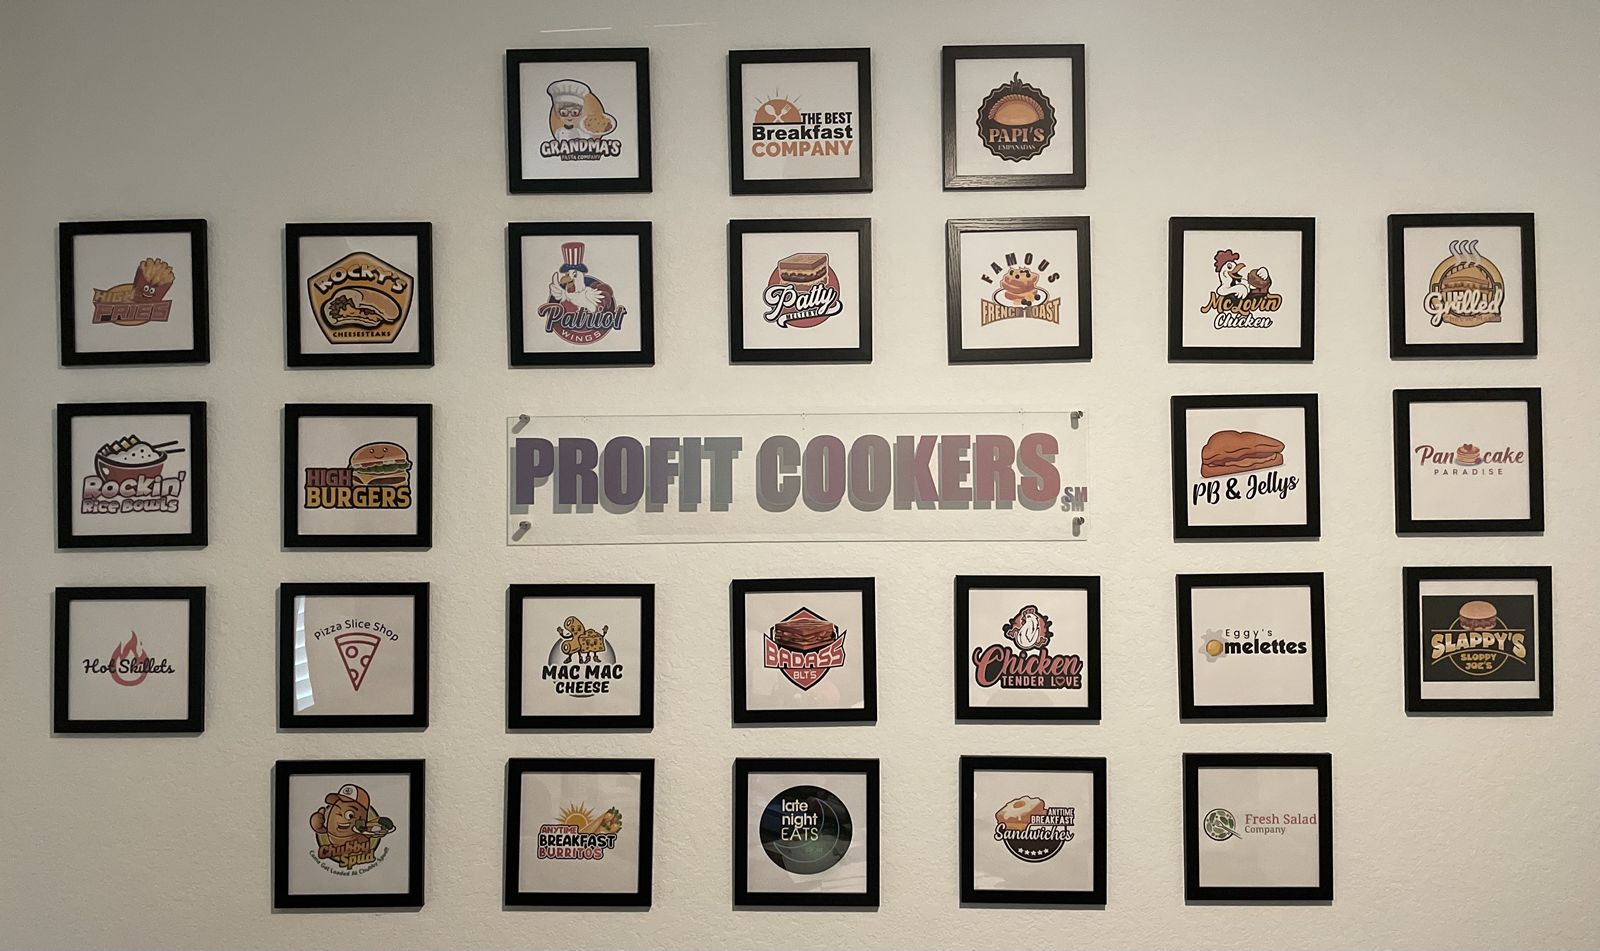 Profit Cookers garantit 30% de profit aux restaurants